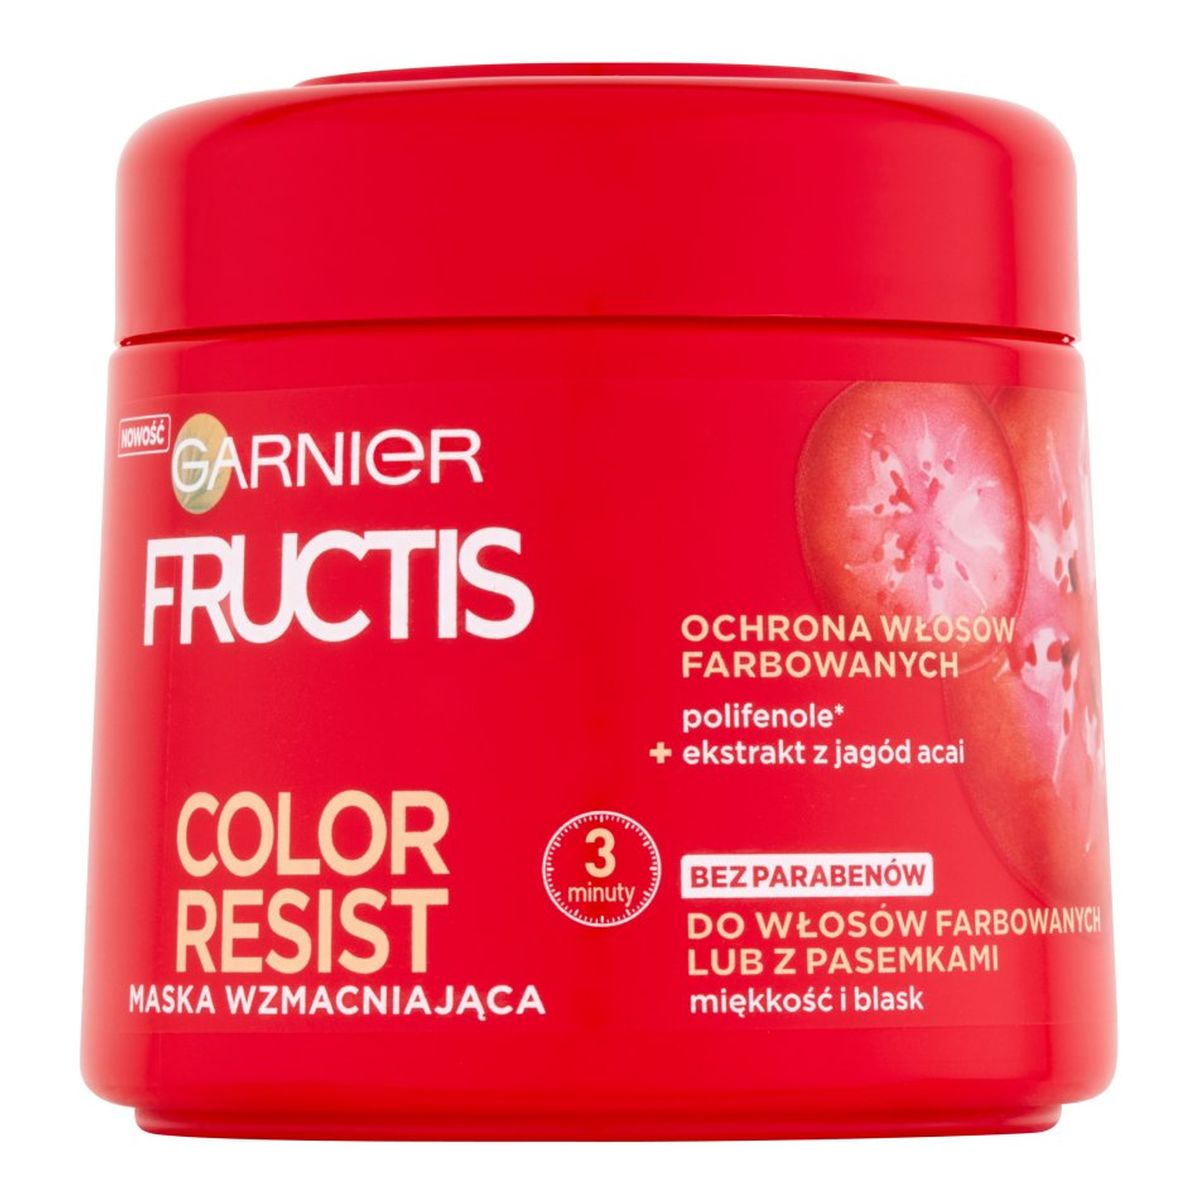 Garnier Fructis Color Resist maska wzmacniająca do włosów farbowanych i z pasemkami 300ml